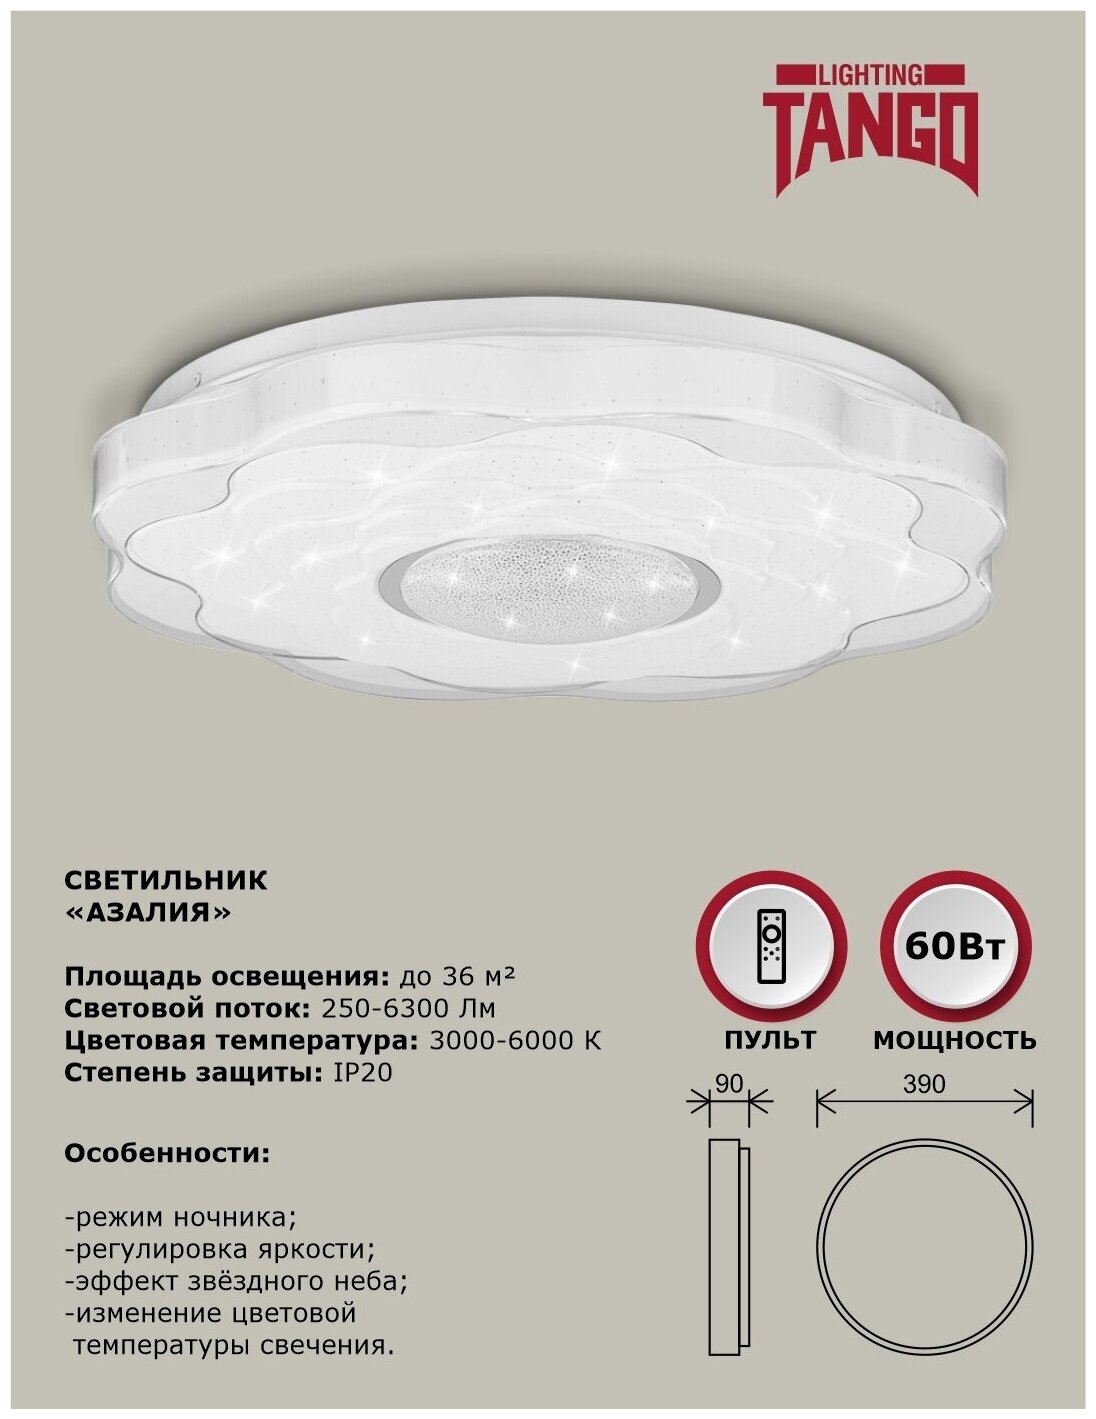 Cветильник светодиодный настенно-потолочный "азалия" 60Вт ( 390*90 мм, основ.350мм) с ИК ДУ TANGO россия LED